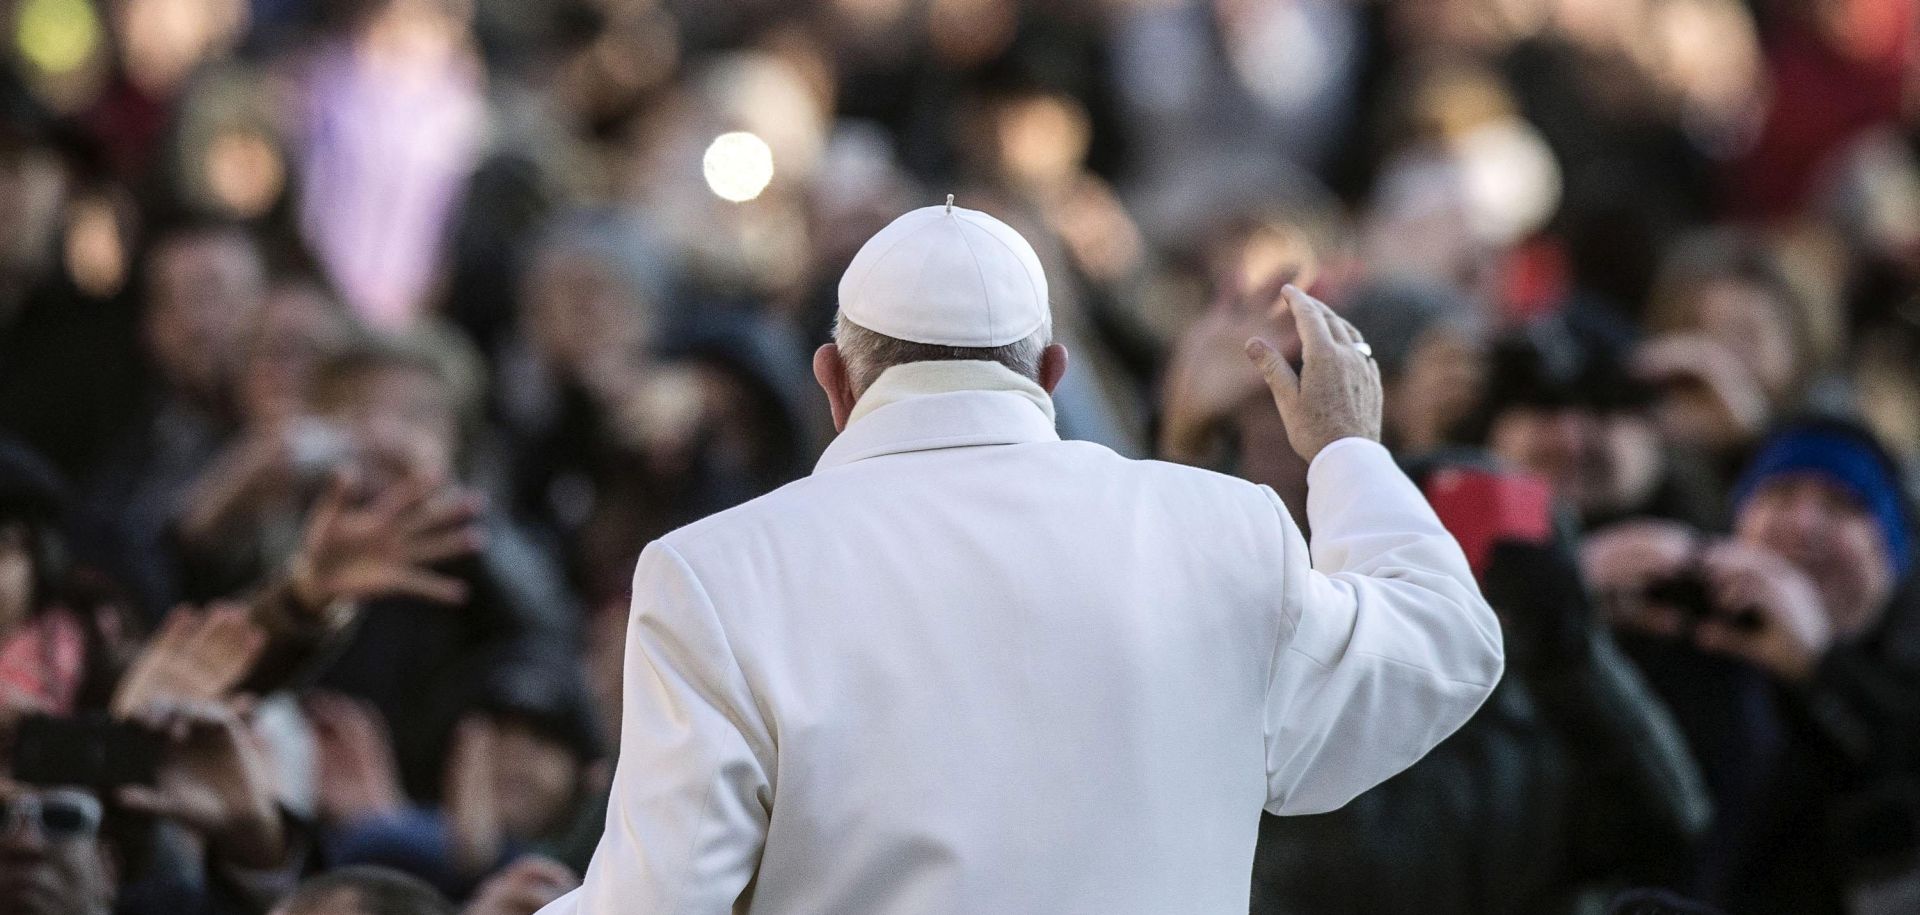 Papa: Mediji bi trebali dati više prostora pozitivnim vijestima